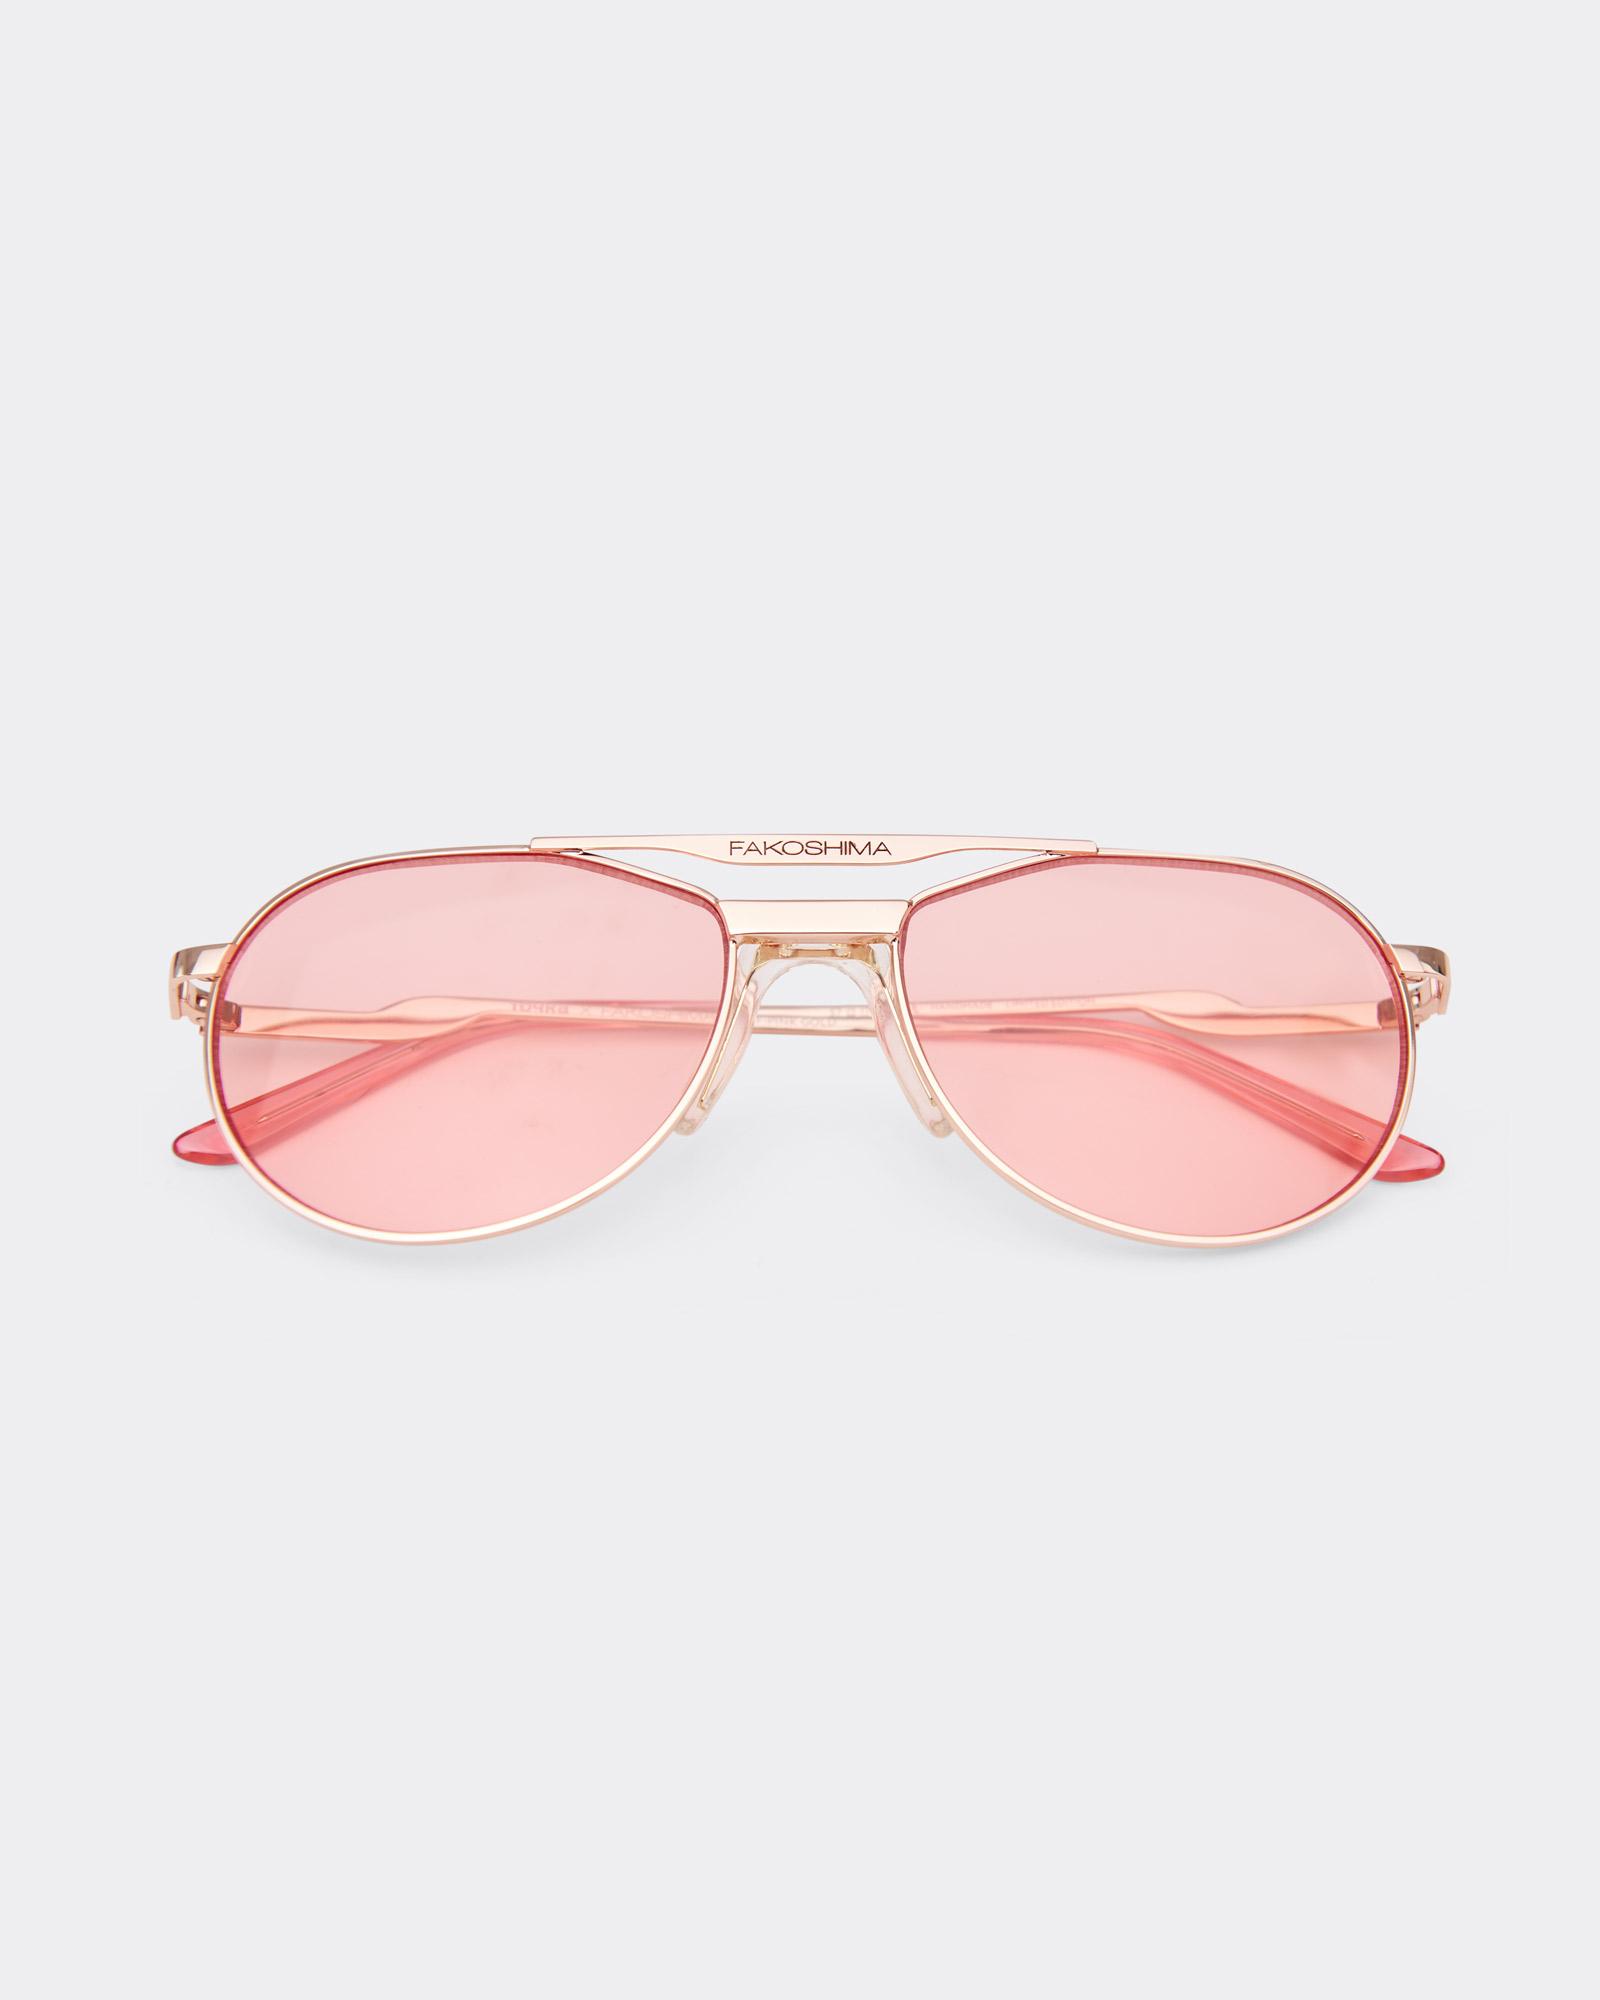 Розовые очки – Точка х Fakoshima, золотая оправа